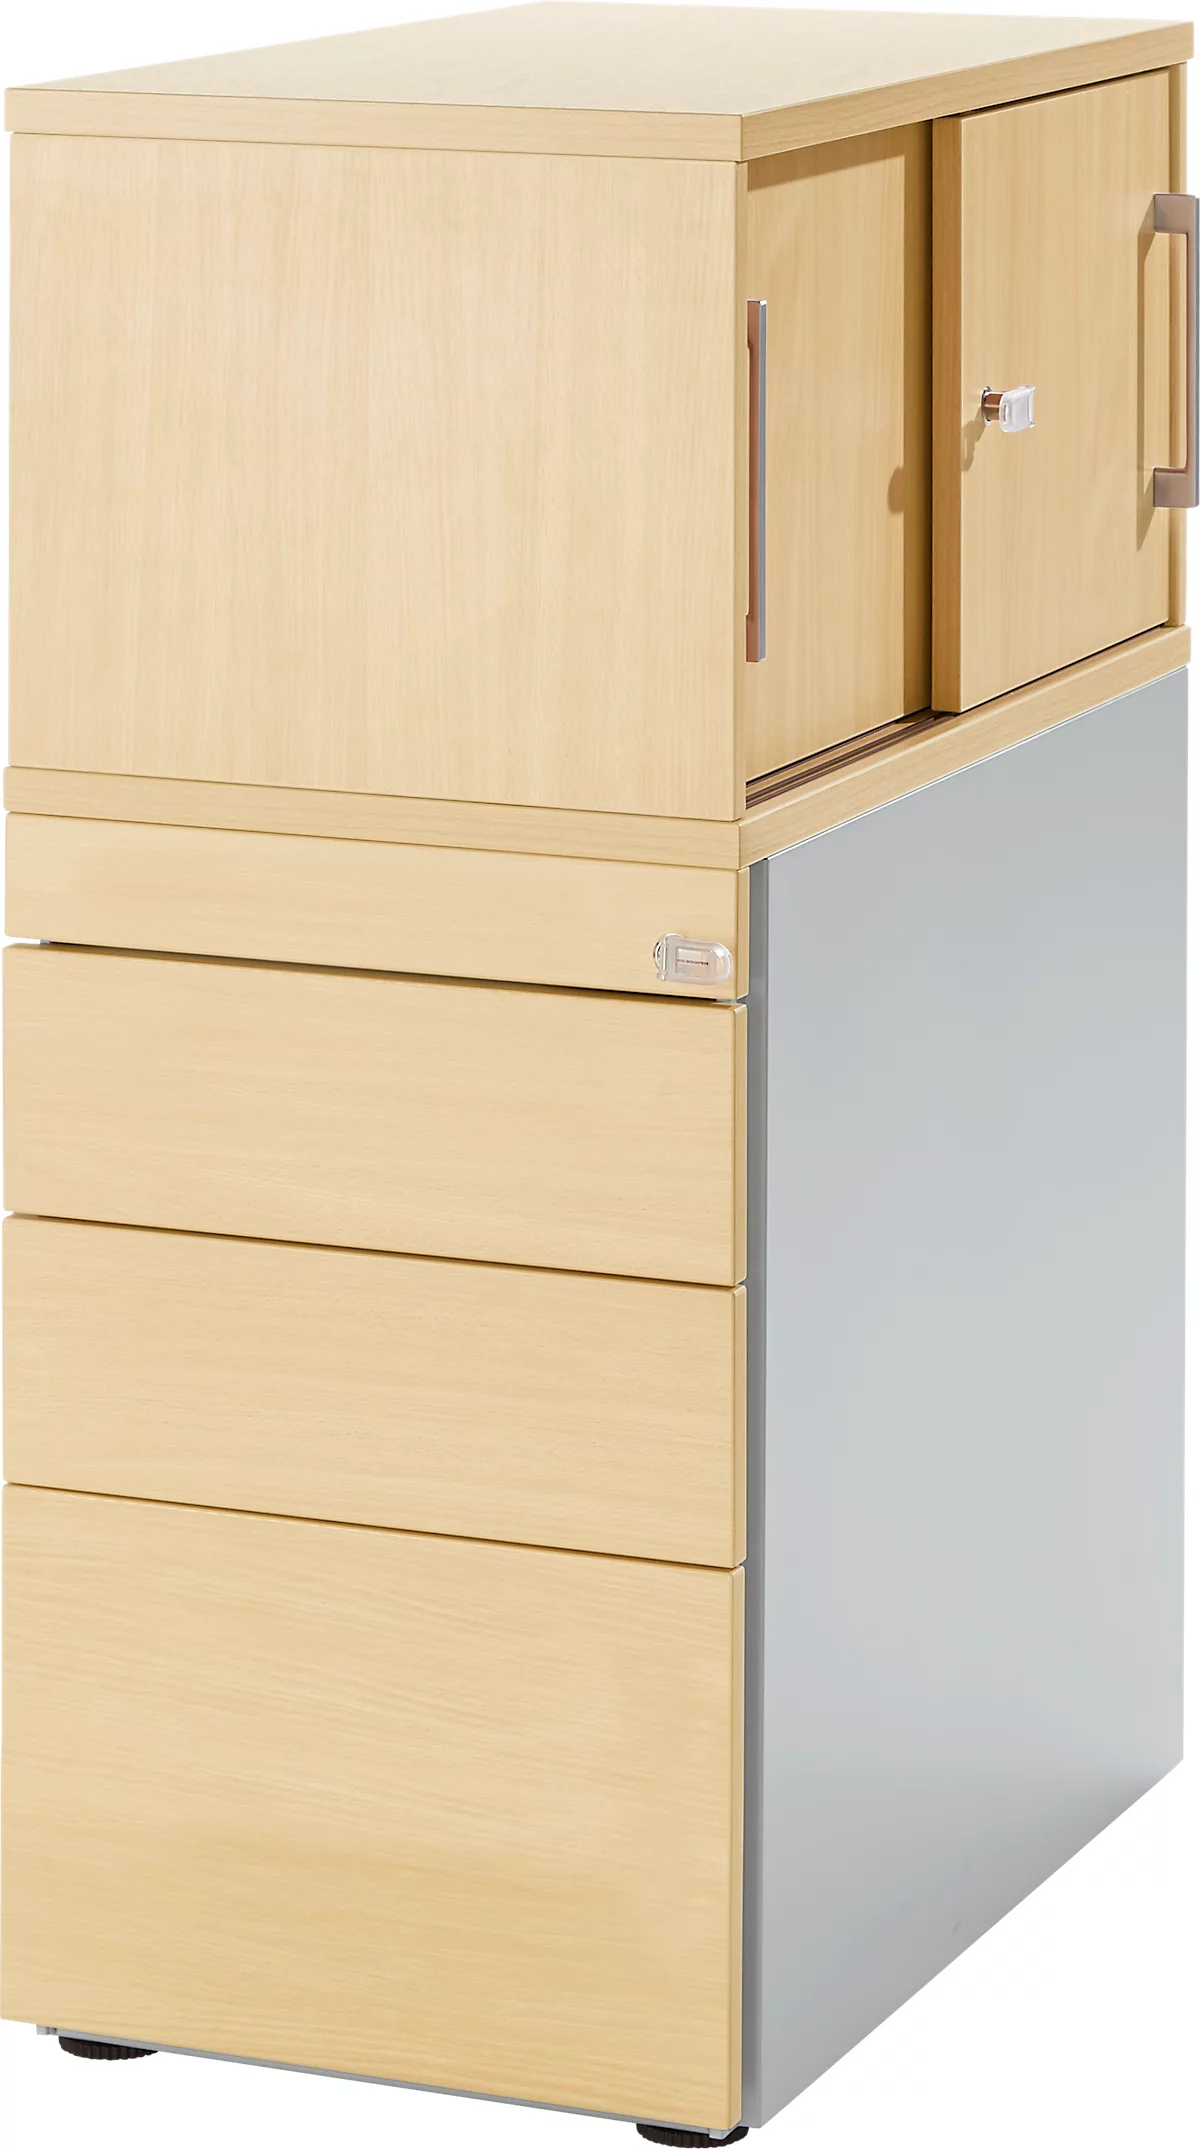 Pedestal Genius de Schäfer Shop con armario adicional incl. puerta corredera, con cierre completo, ranura lateral para manilla, arce